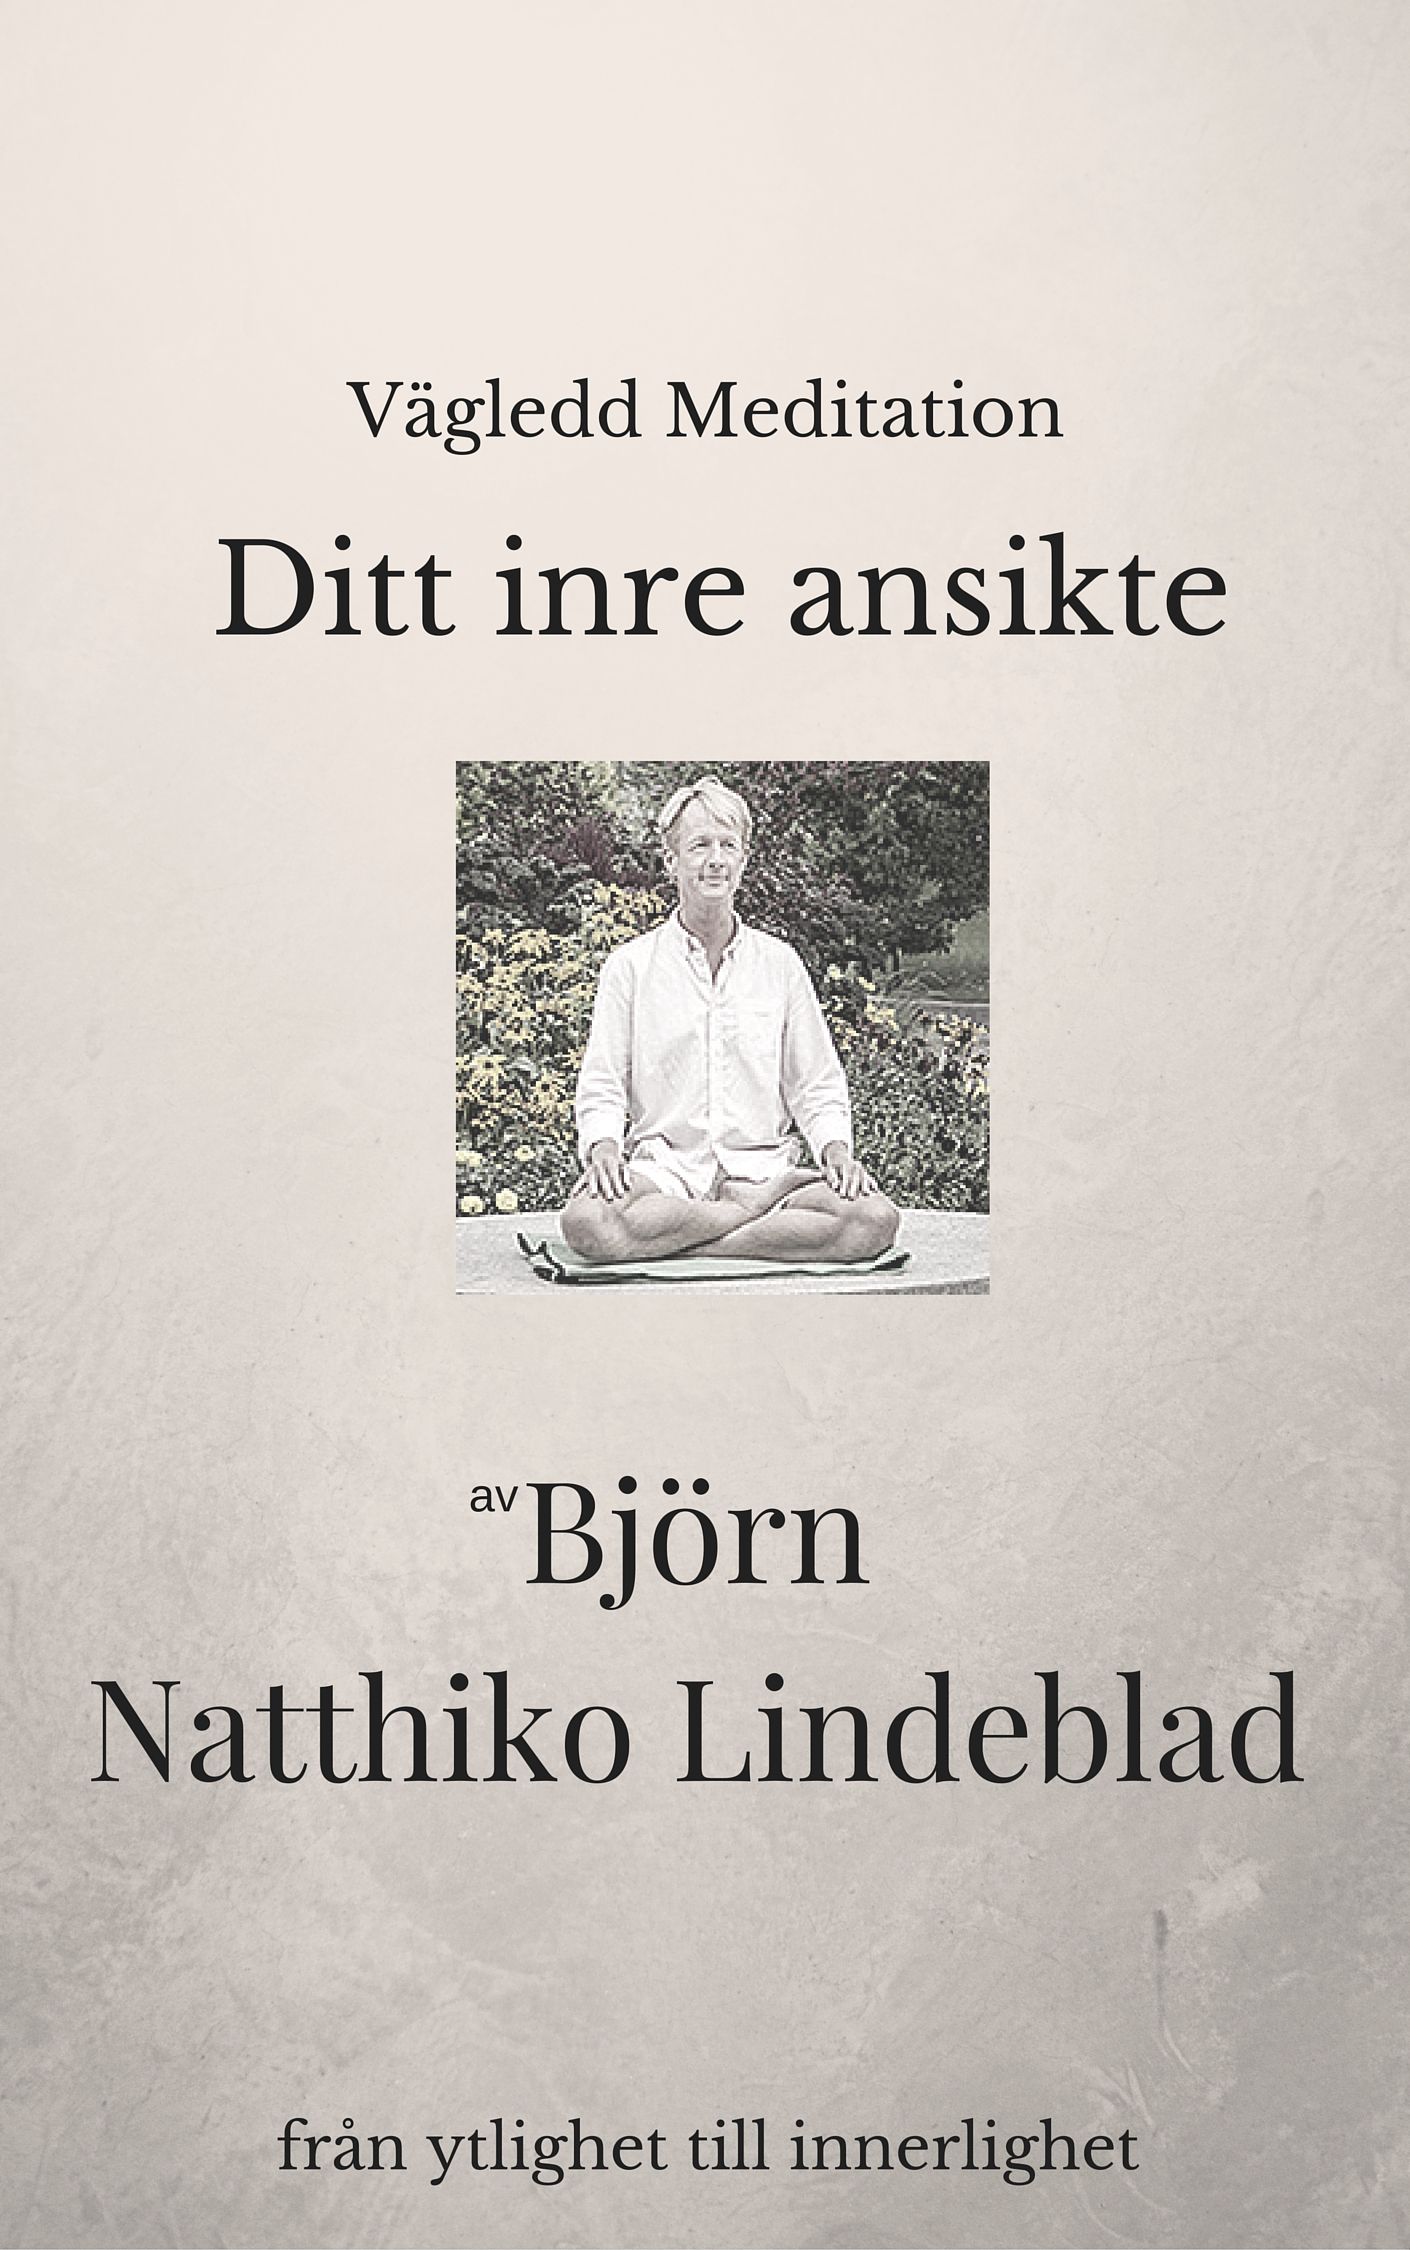 Ditt inre ansikte , ljudbok av Björn Natthiko Lindeblad